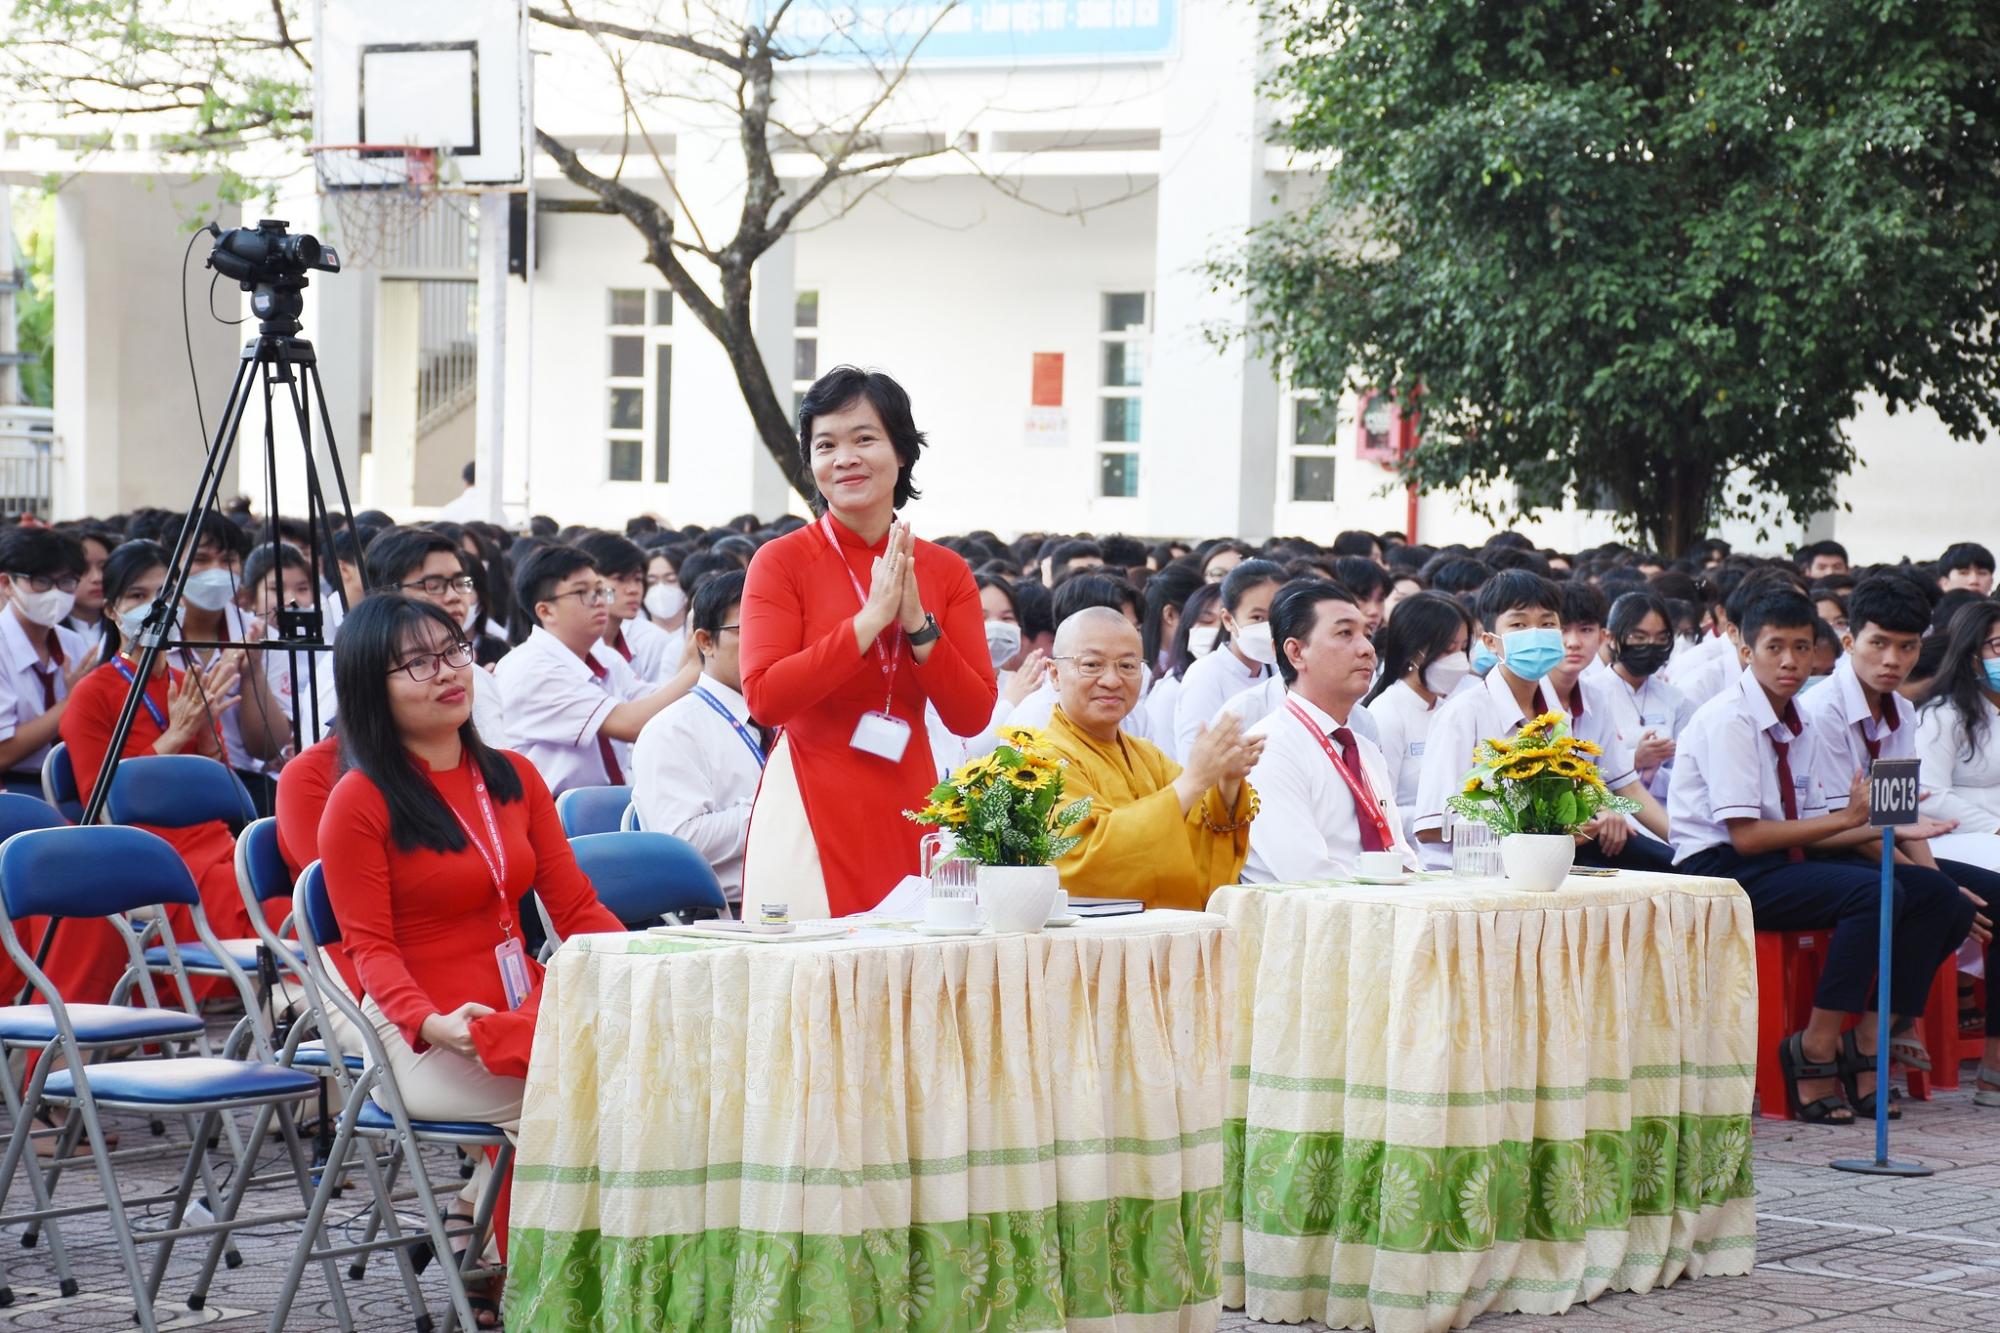 Pháp thoại lòng biết ơn tại Trường THPT Năng khiếu TDTT huyện Bình Chánh